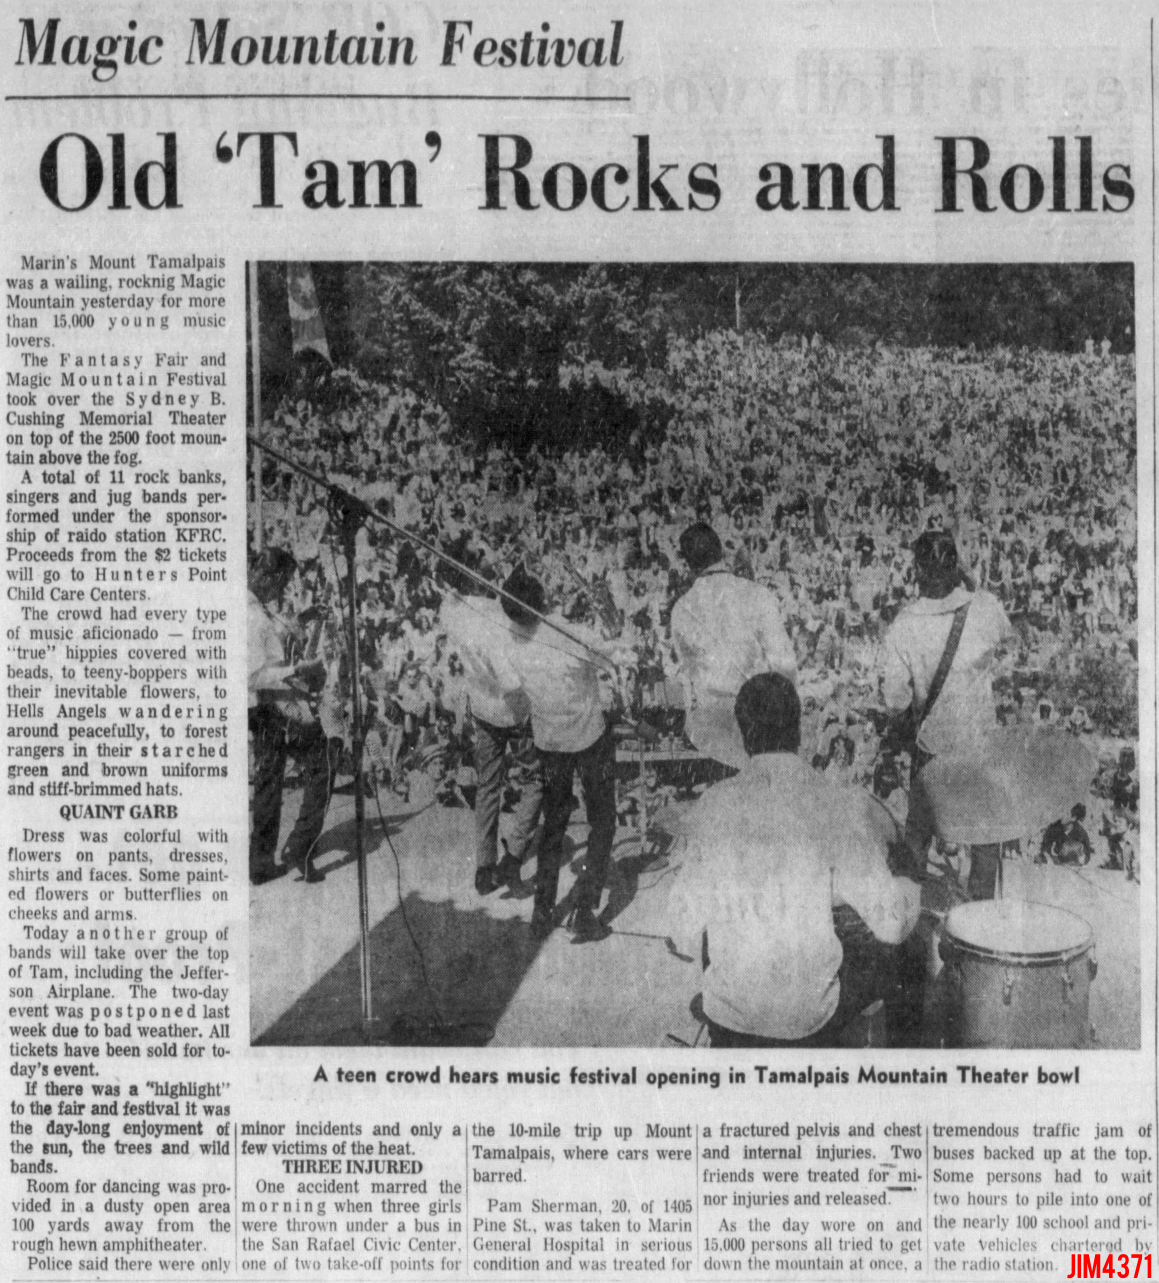 The Doors - Tamalpais Mountain Theater 1967 - Review